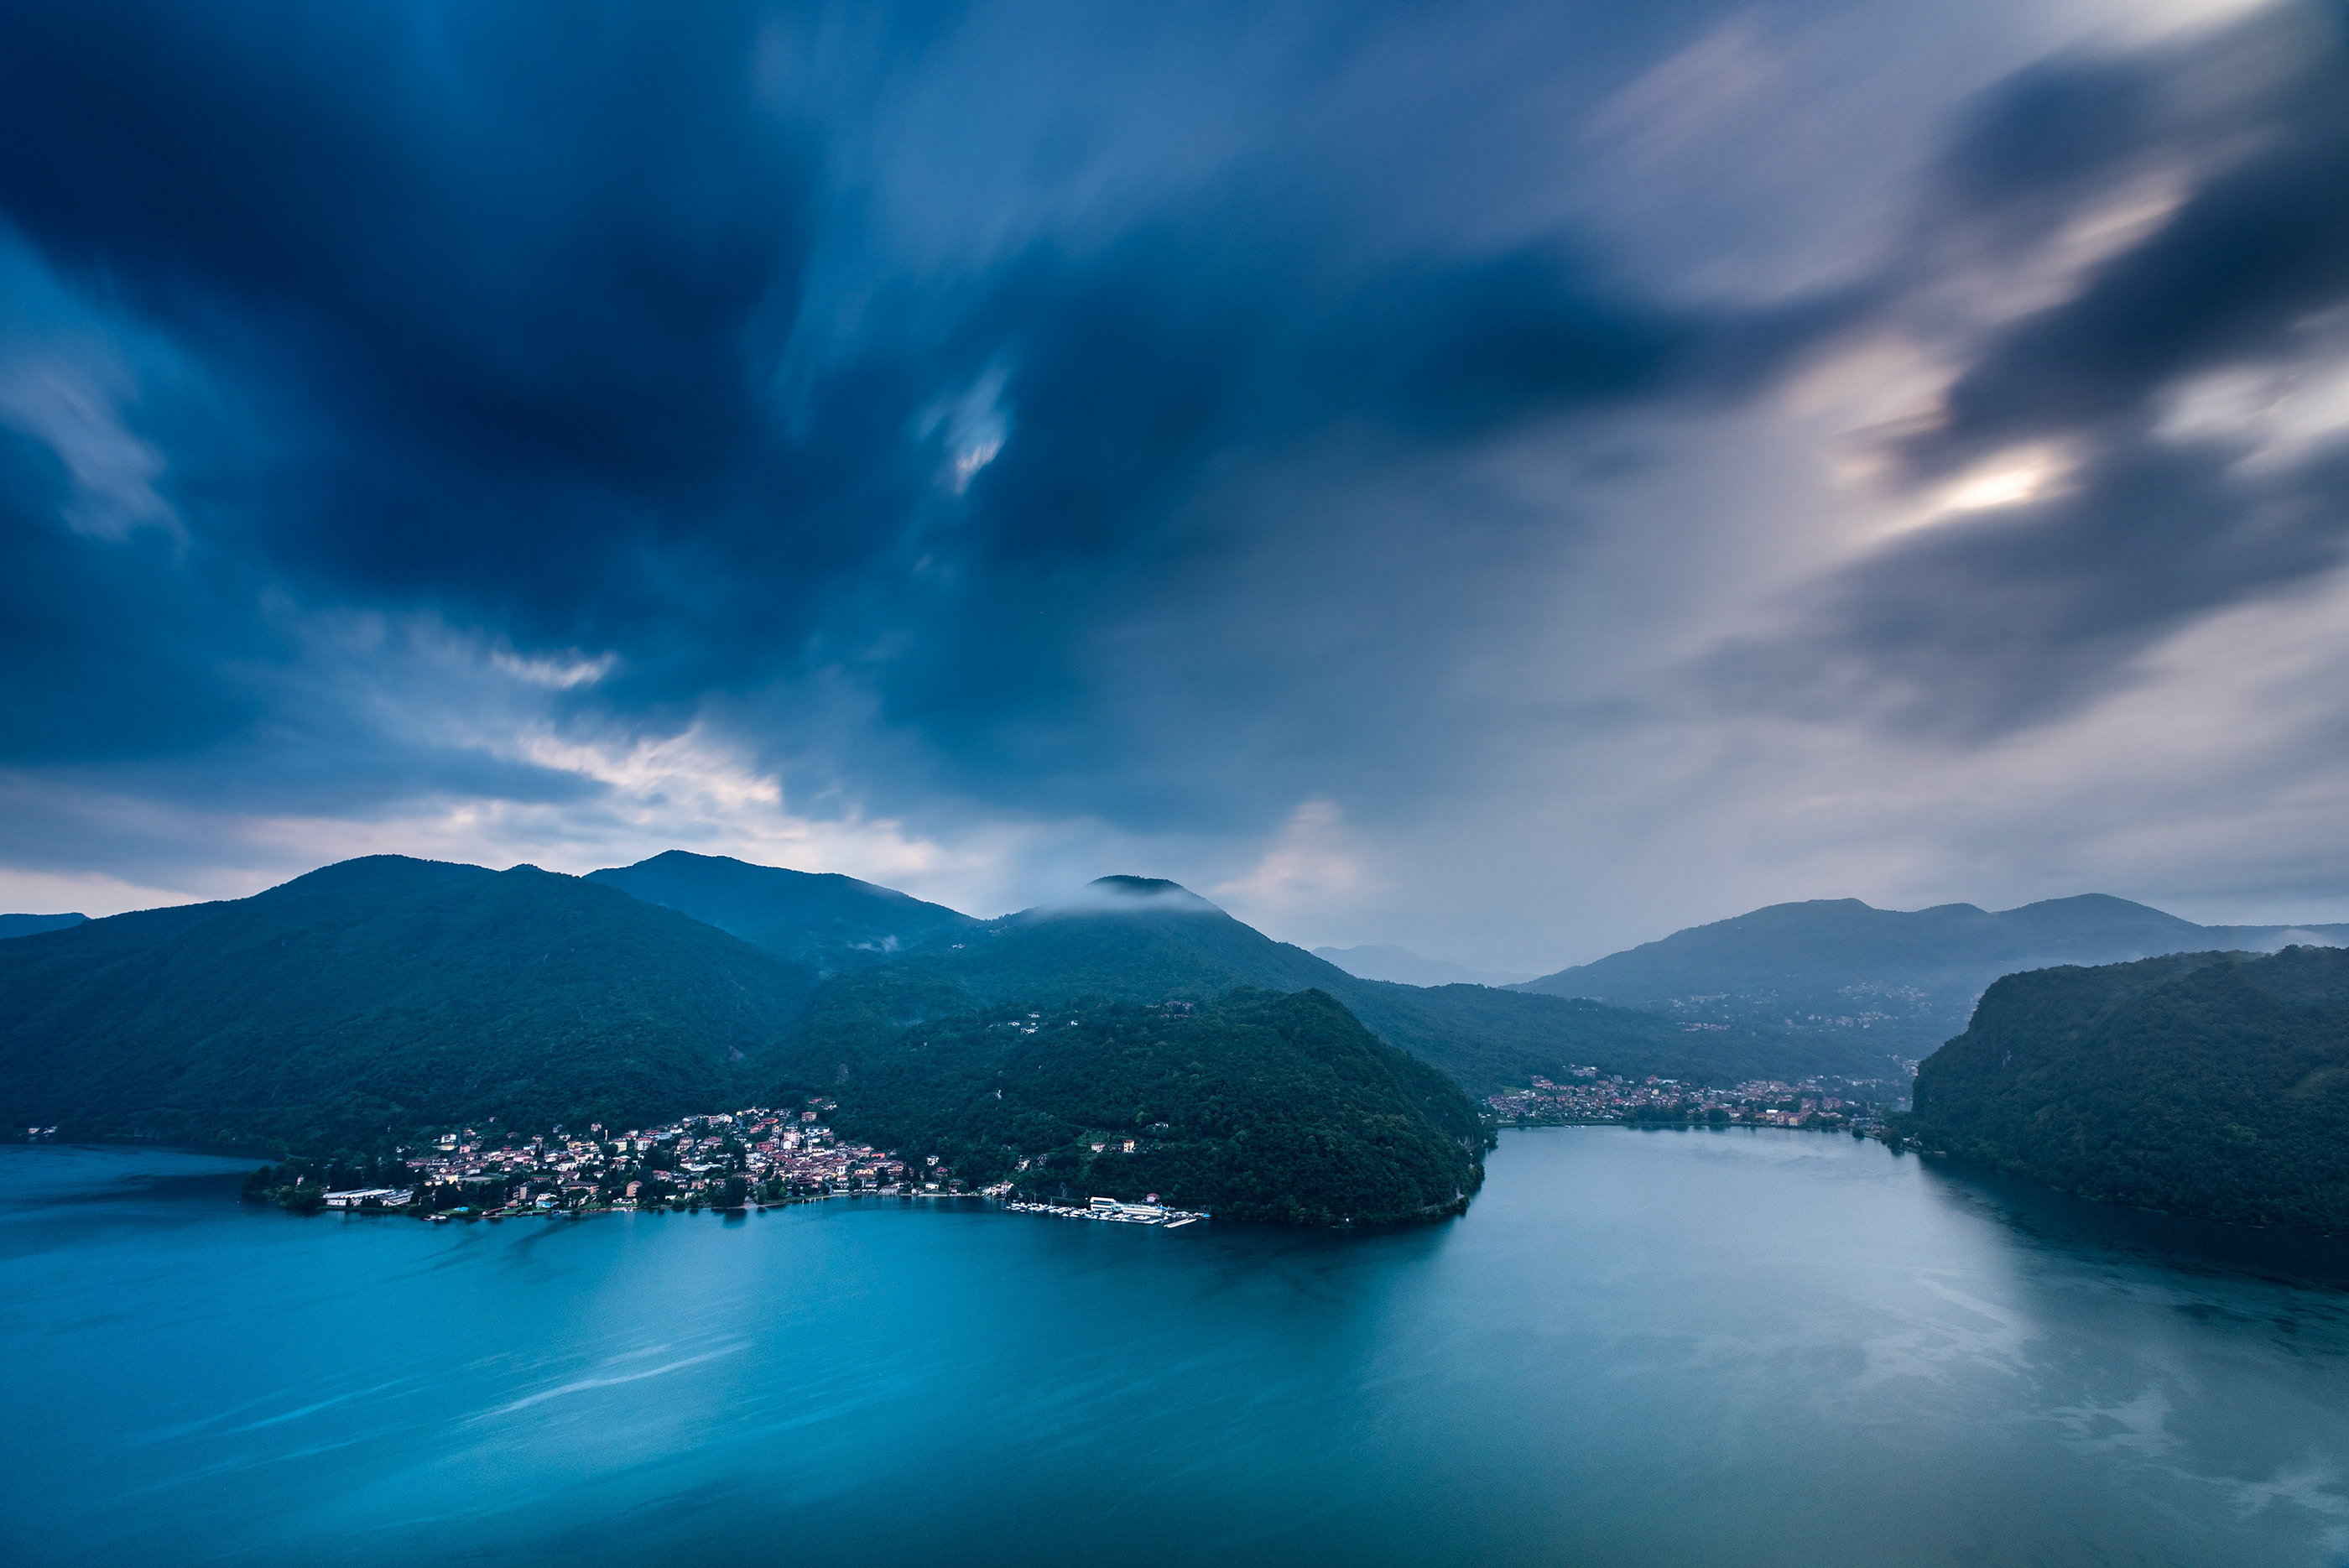 瑞士湖泊美景图片桌面壁纸